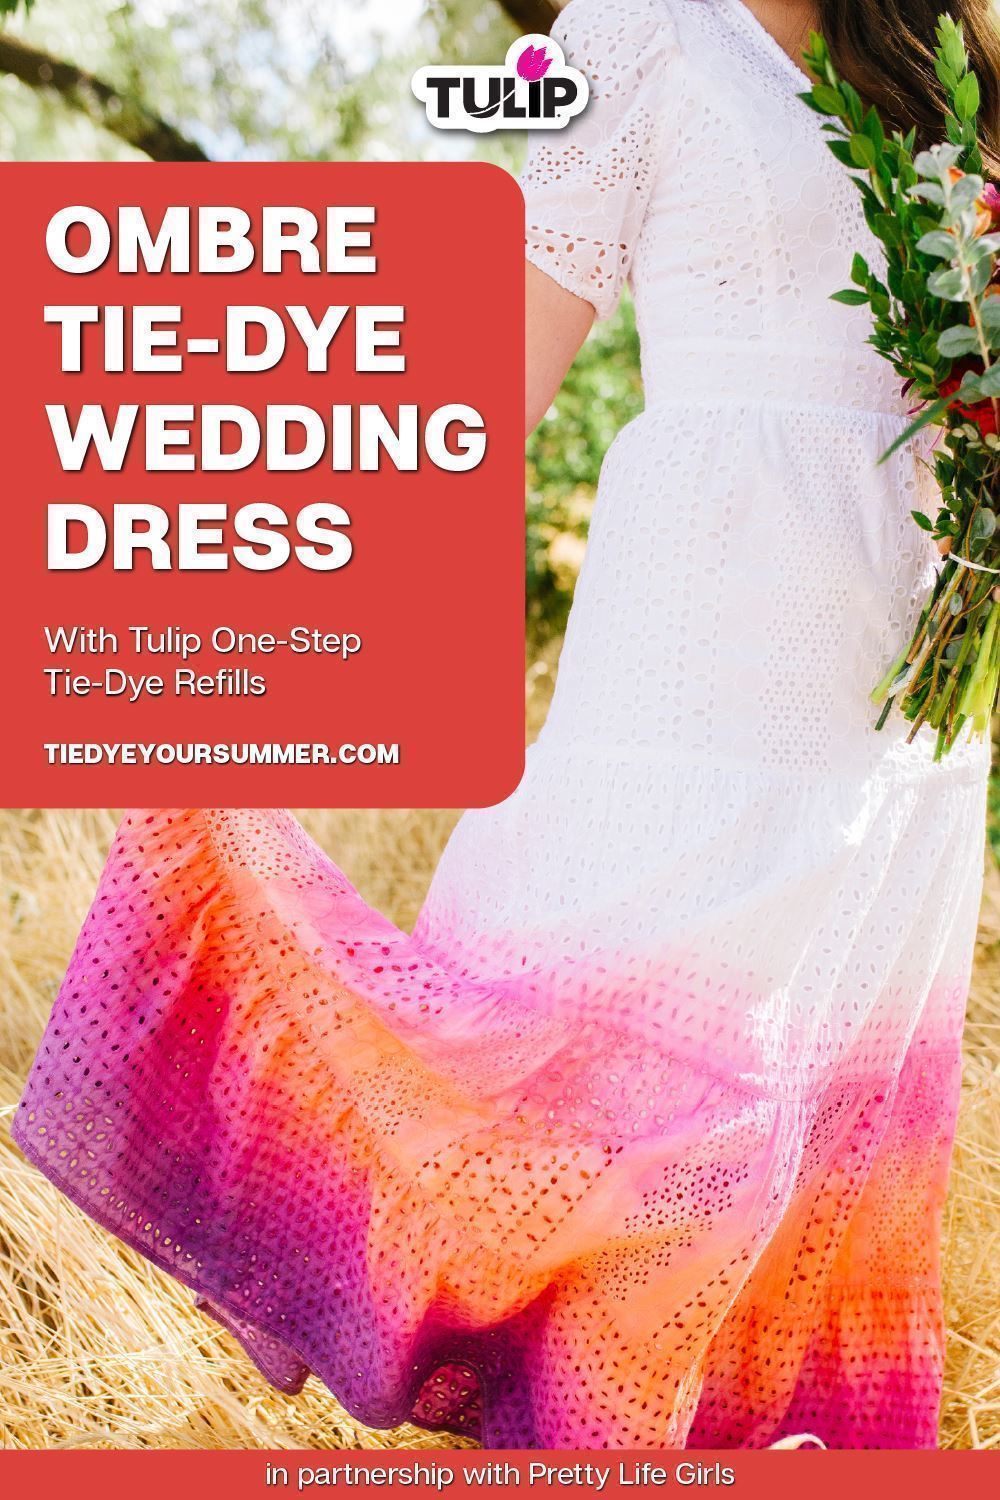 Custom Wedding Dress with Ombré Tie-Dye